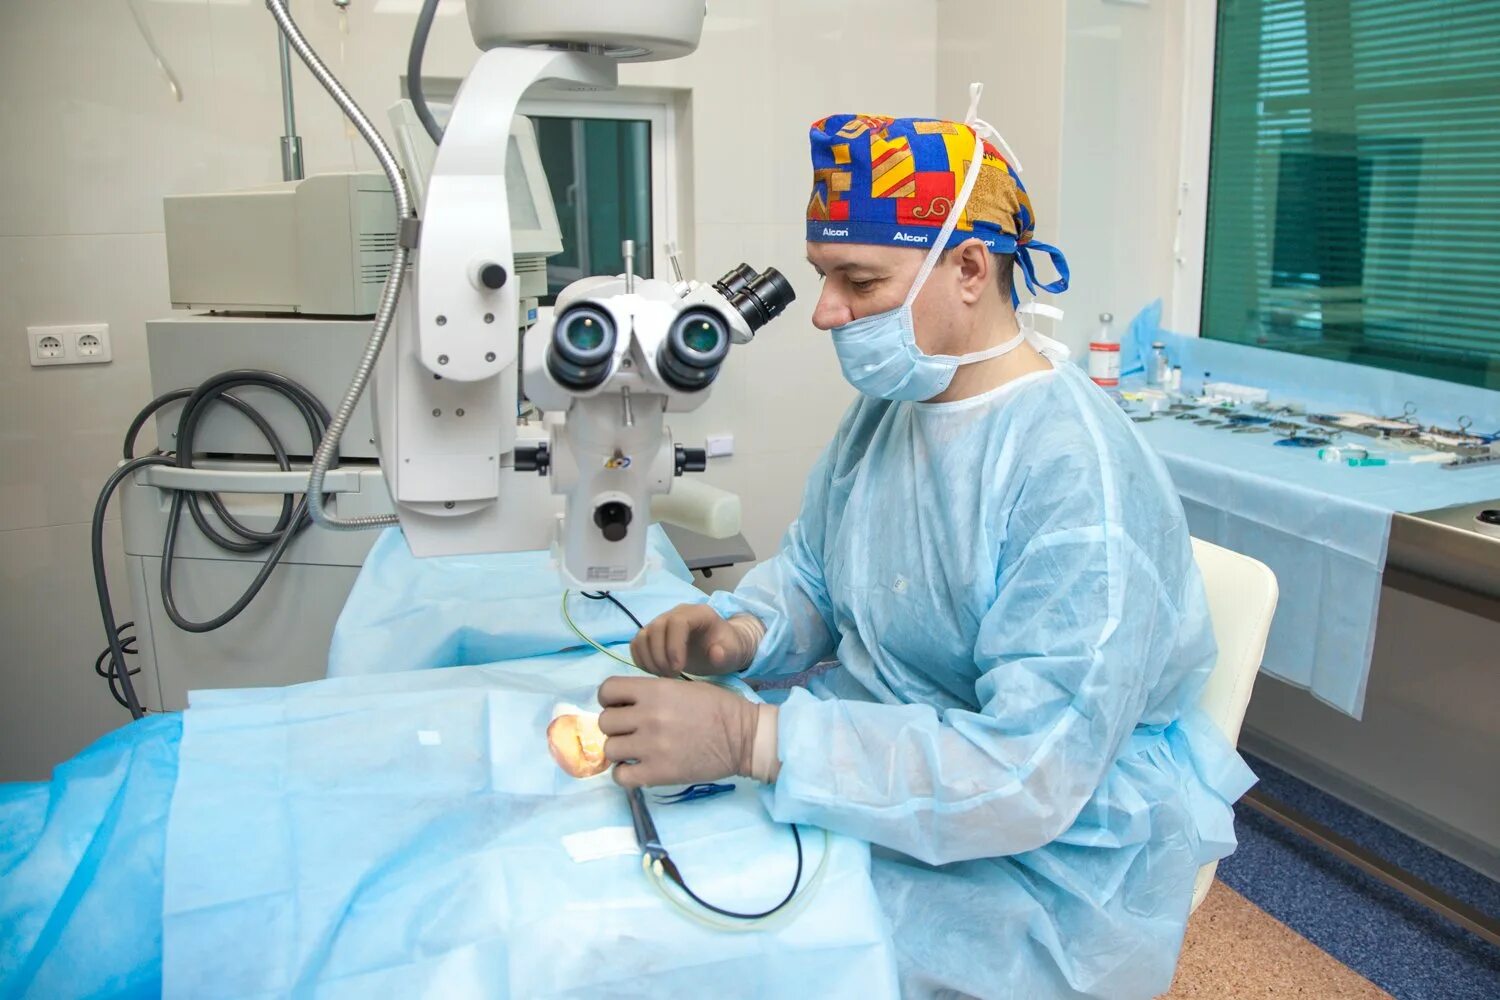 Лечение катаракты цена операции. Факоэмульсификация катаракты с имплантацией ИОЛ. Операция ультразвуковая факоэмульсификация катаракты. Ультразвуковое хирургия катаракты - факоэмульсификация. Бесшовная ультразвуковая хирургия катаракты.